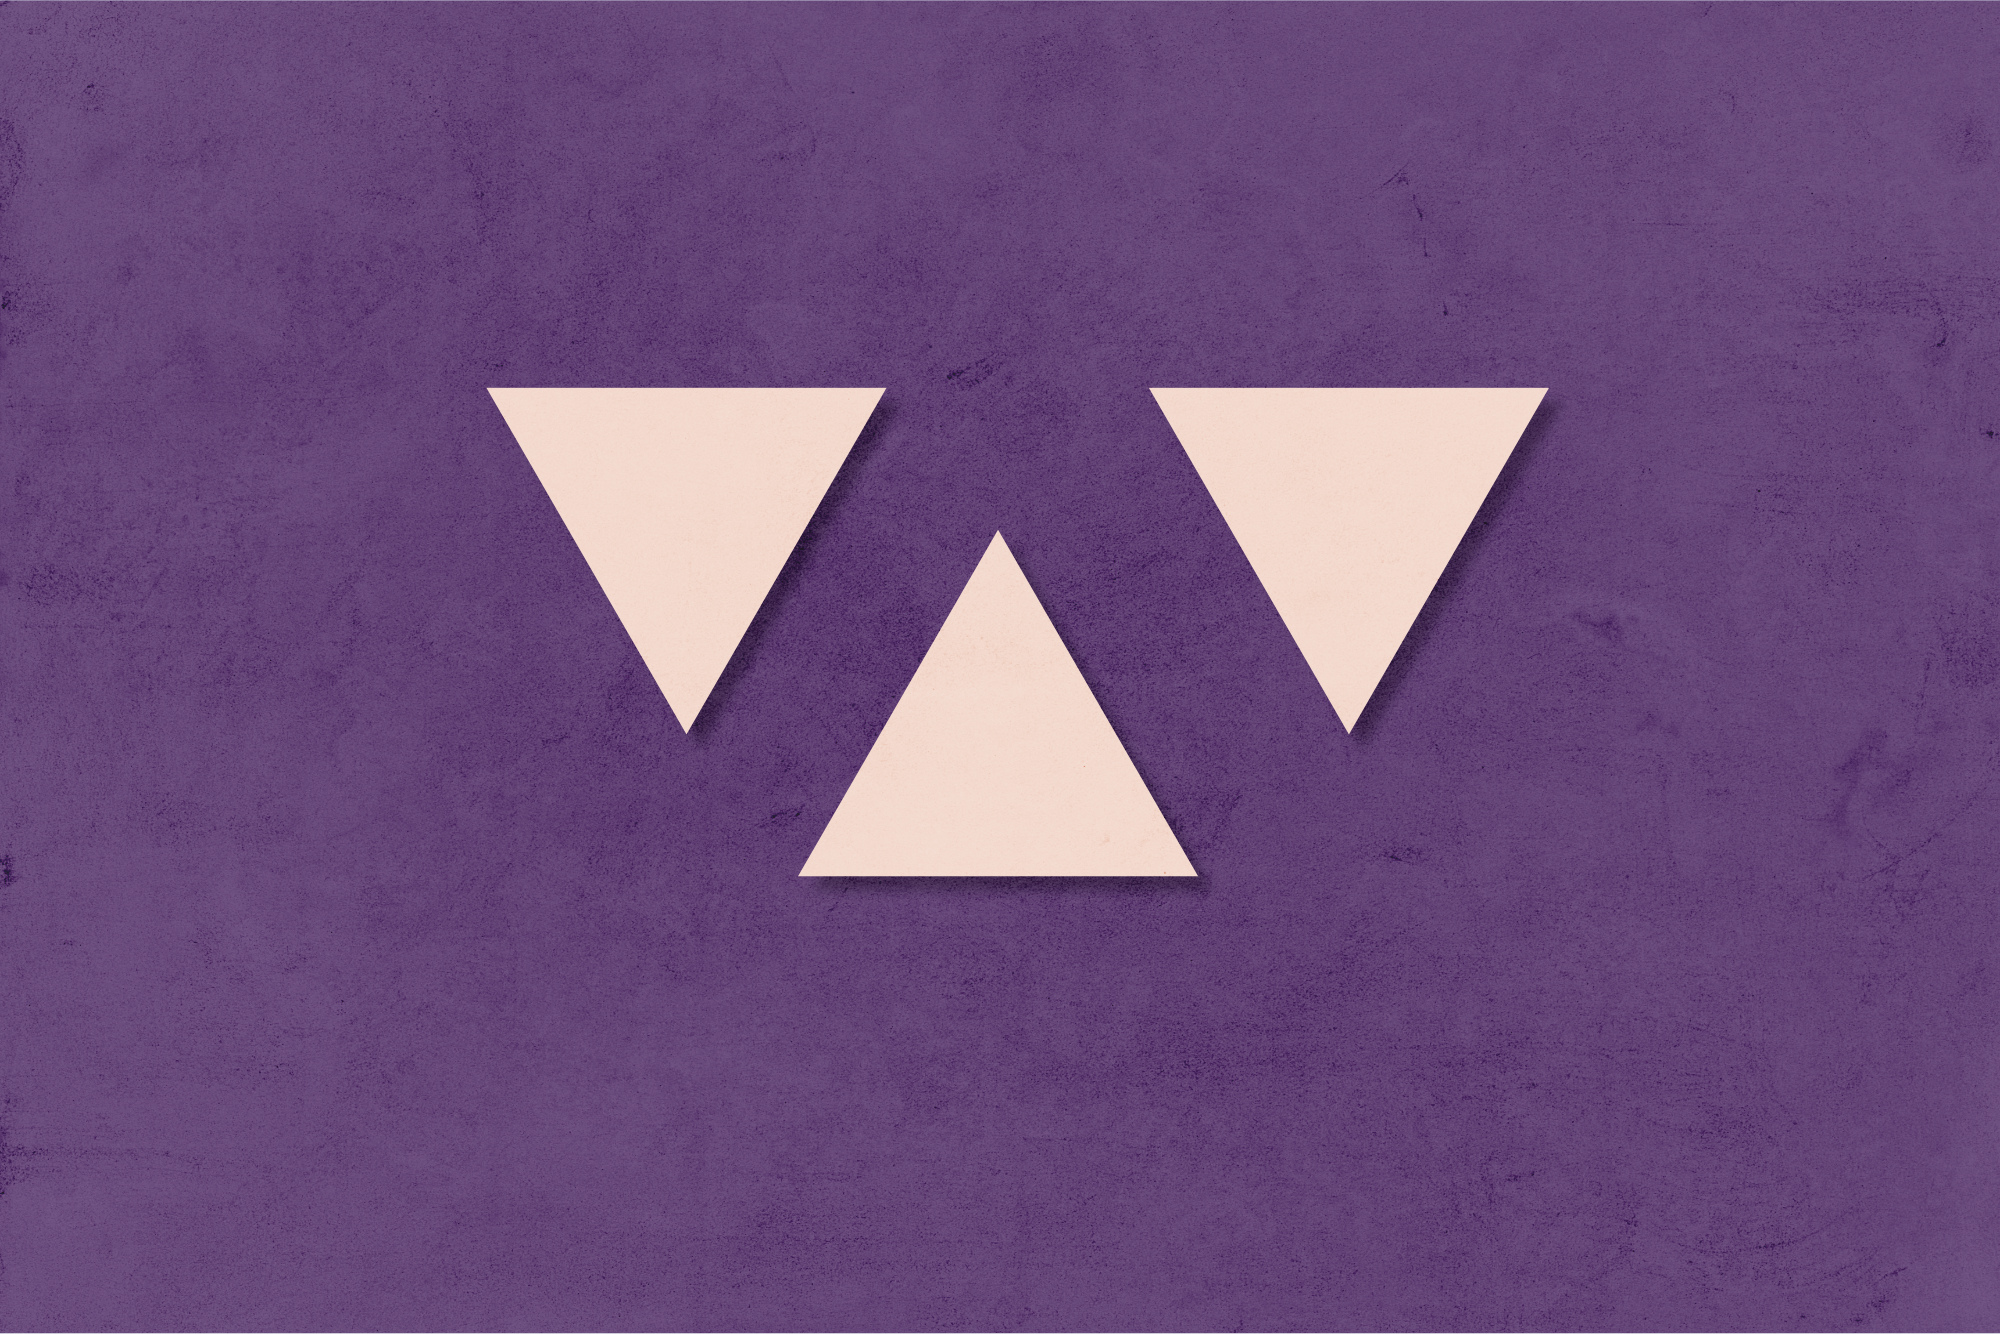 Ein Bild mit der Farbkombination Mystisches Violett und Zartes Rosé